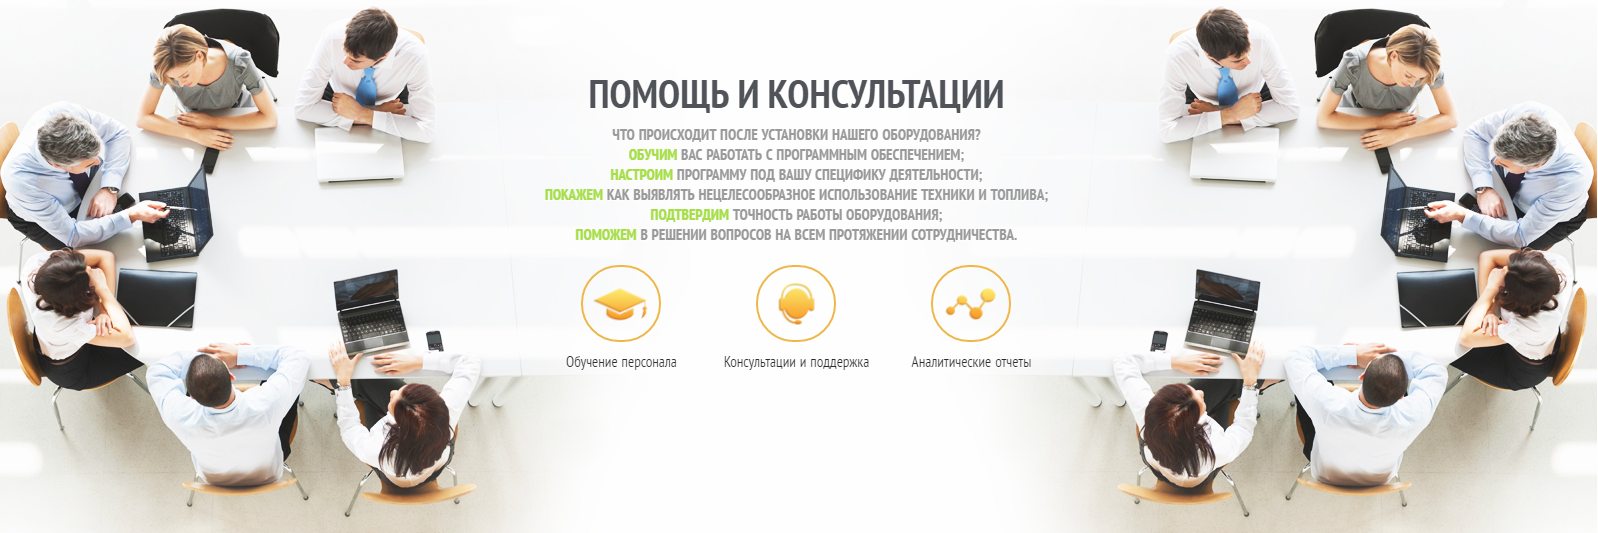 Помощь и консультации по системам мониторинга транспорта в Воронеже